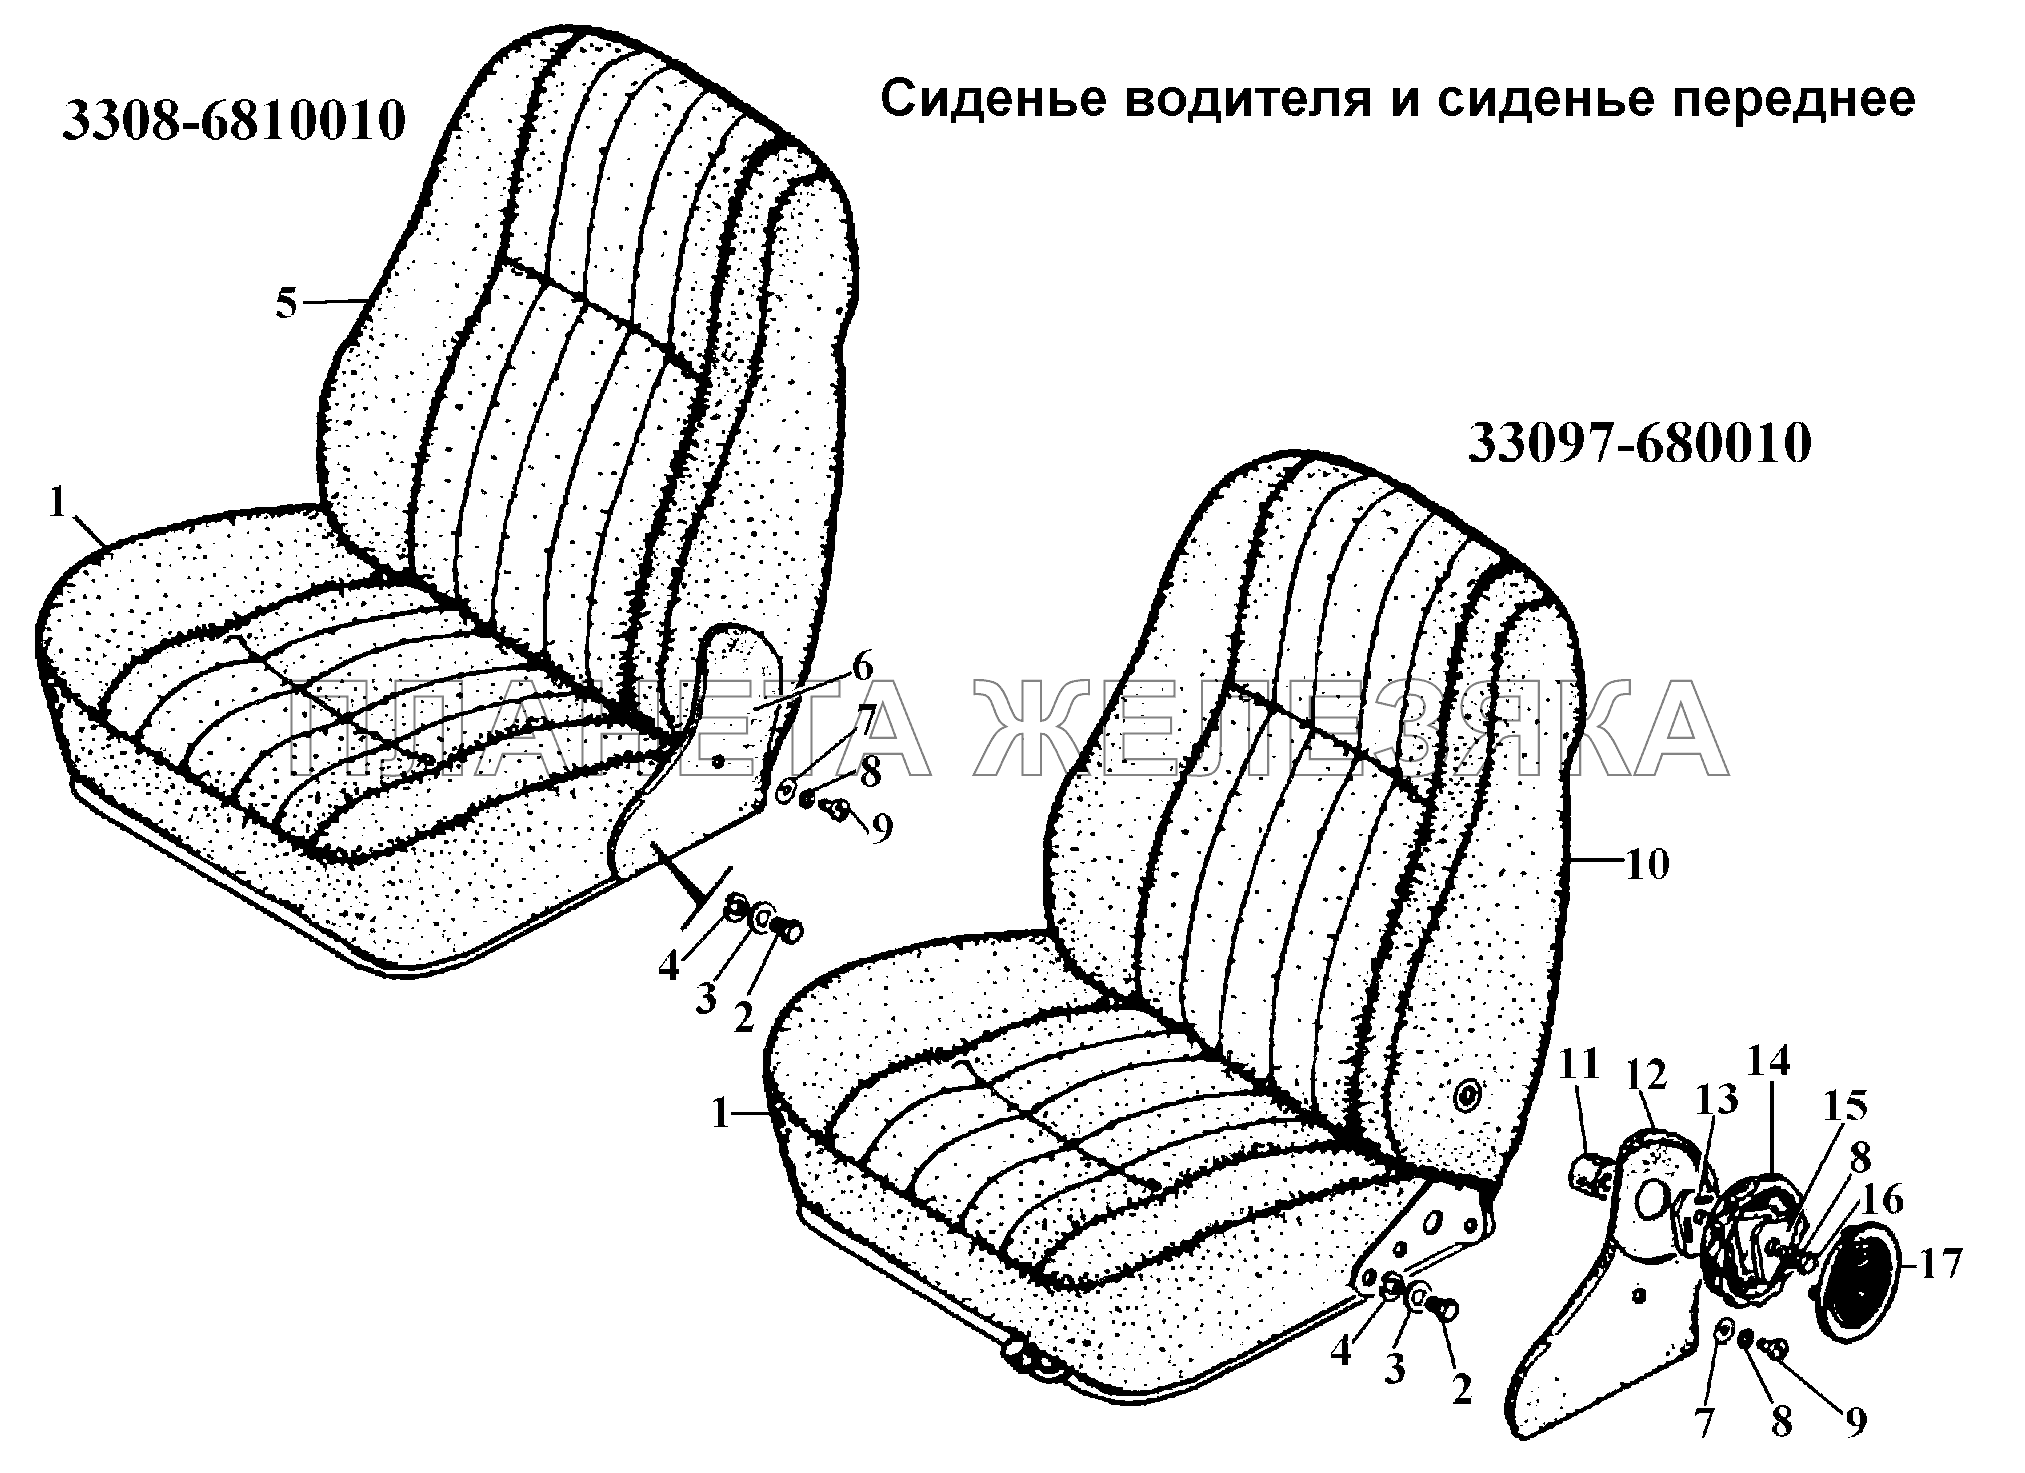 Сиденье водителя и сиденье переднее ГАЗ-3308